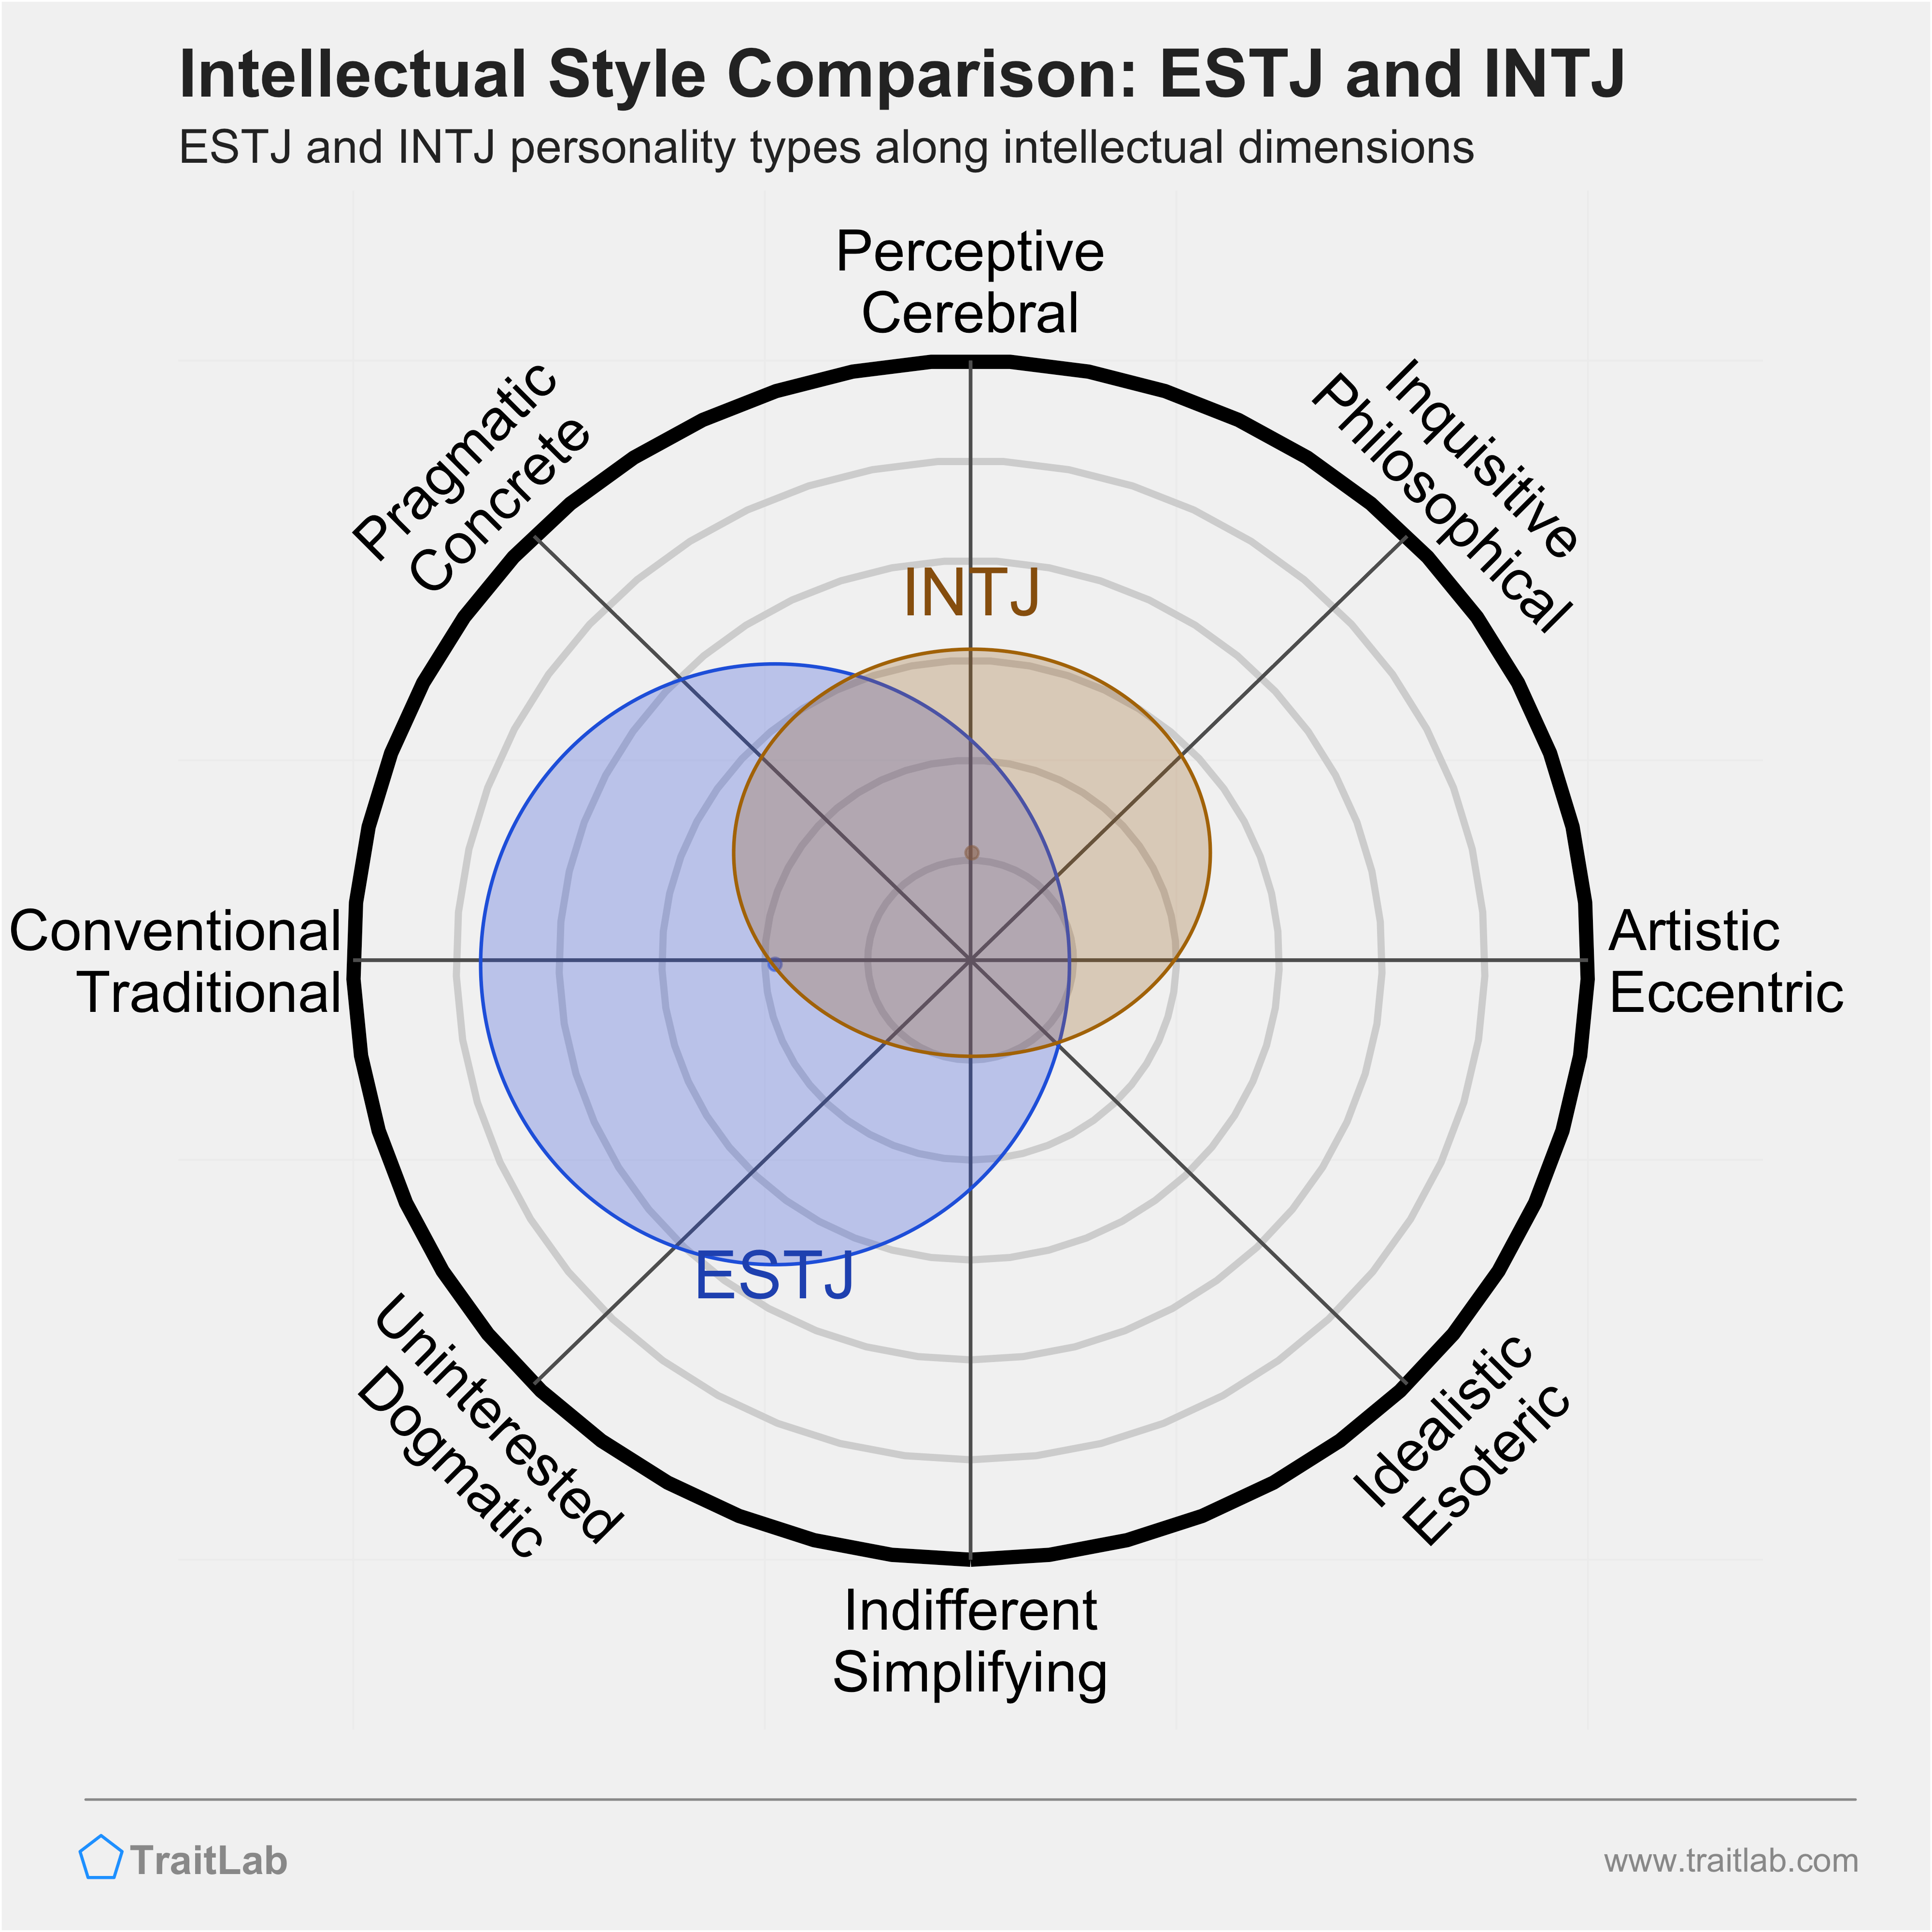 ESTJ and INTJ comparison across intellectual dimensions